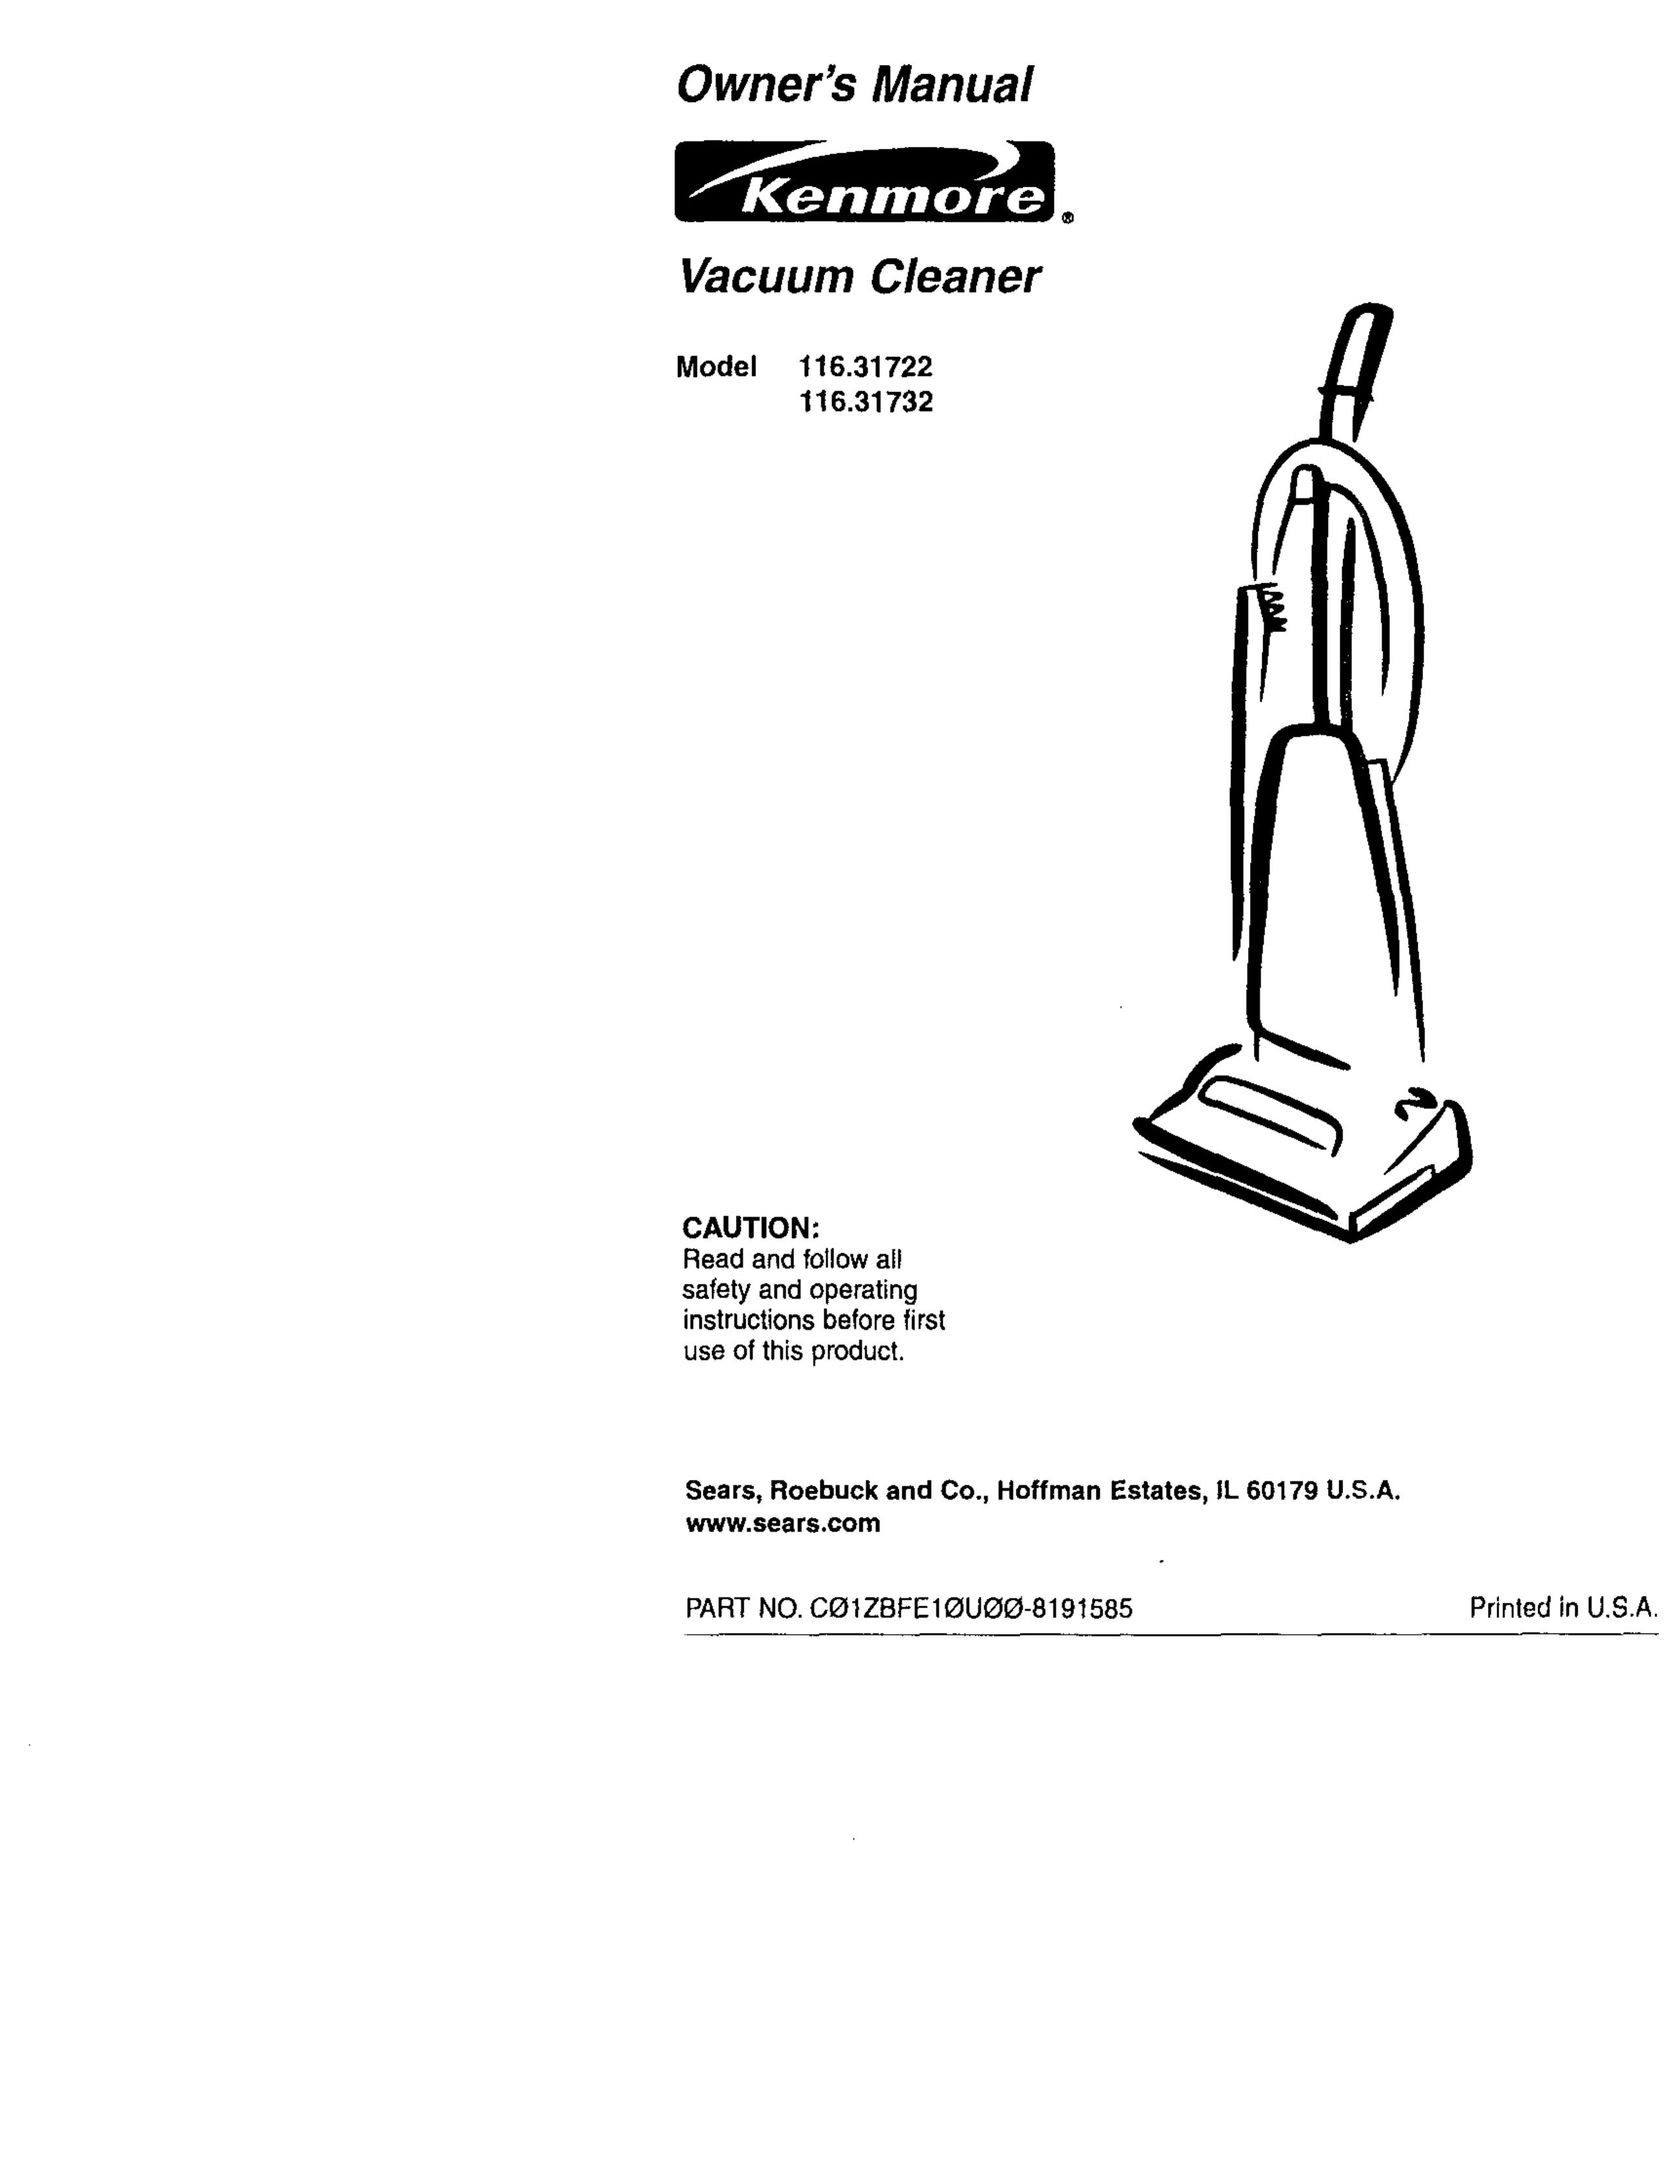 Kenmore 116.31732 Vacuum Cleaner User Manual